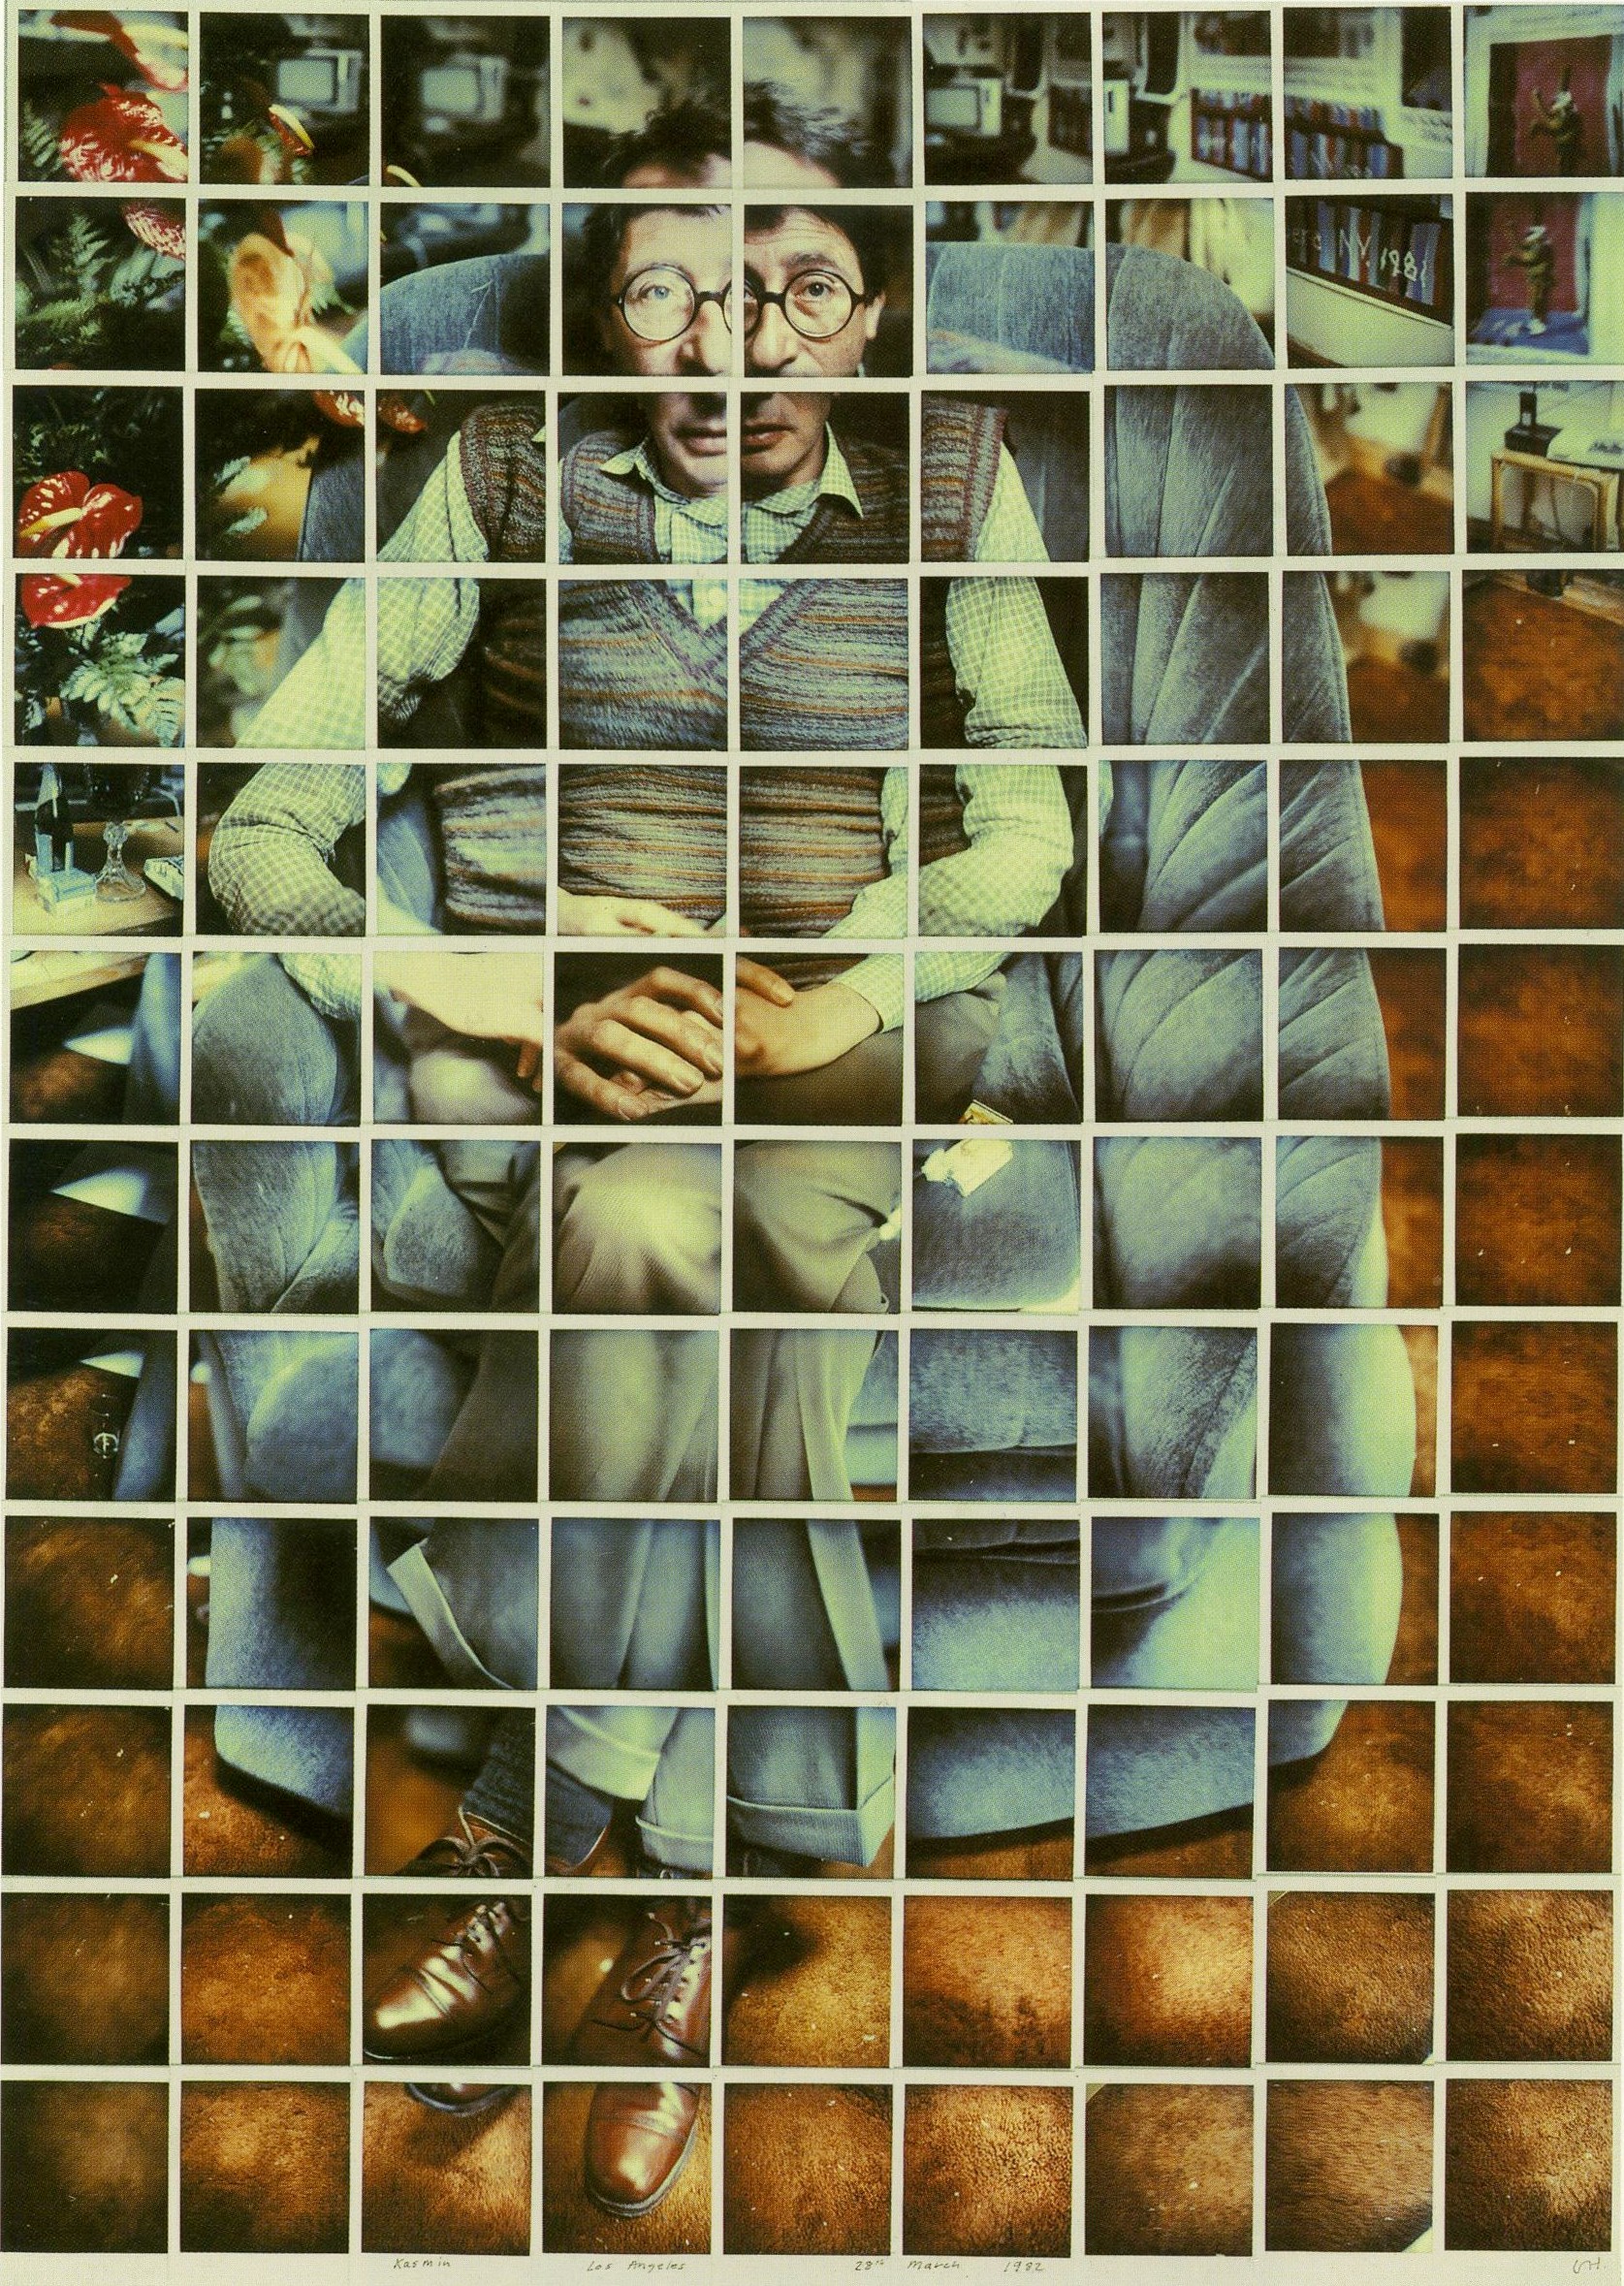 David Hockney - Kasmin, Los Angeles, 28th of March, 1982 (1982).jpg